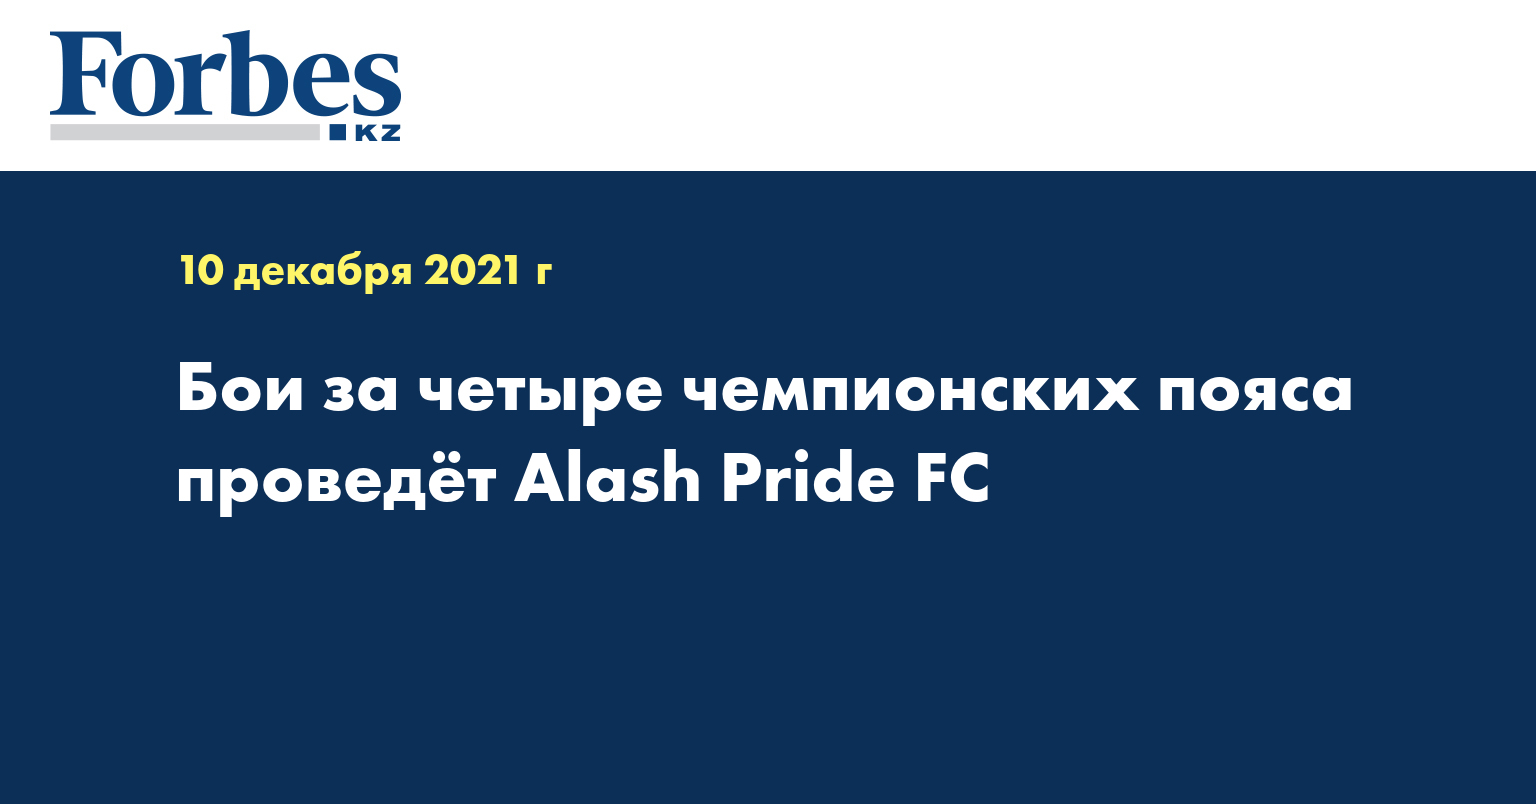 Бои за четыре чемпионских пояса проведёт Alash Pride FC